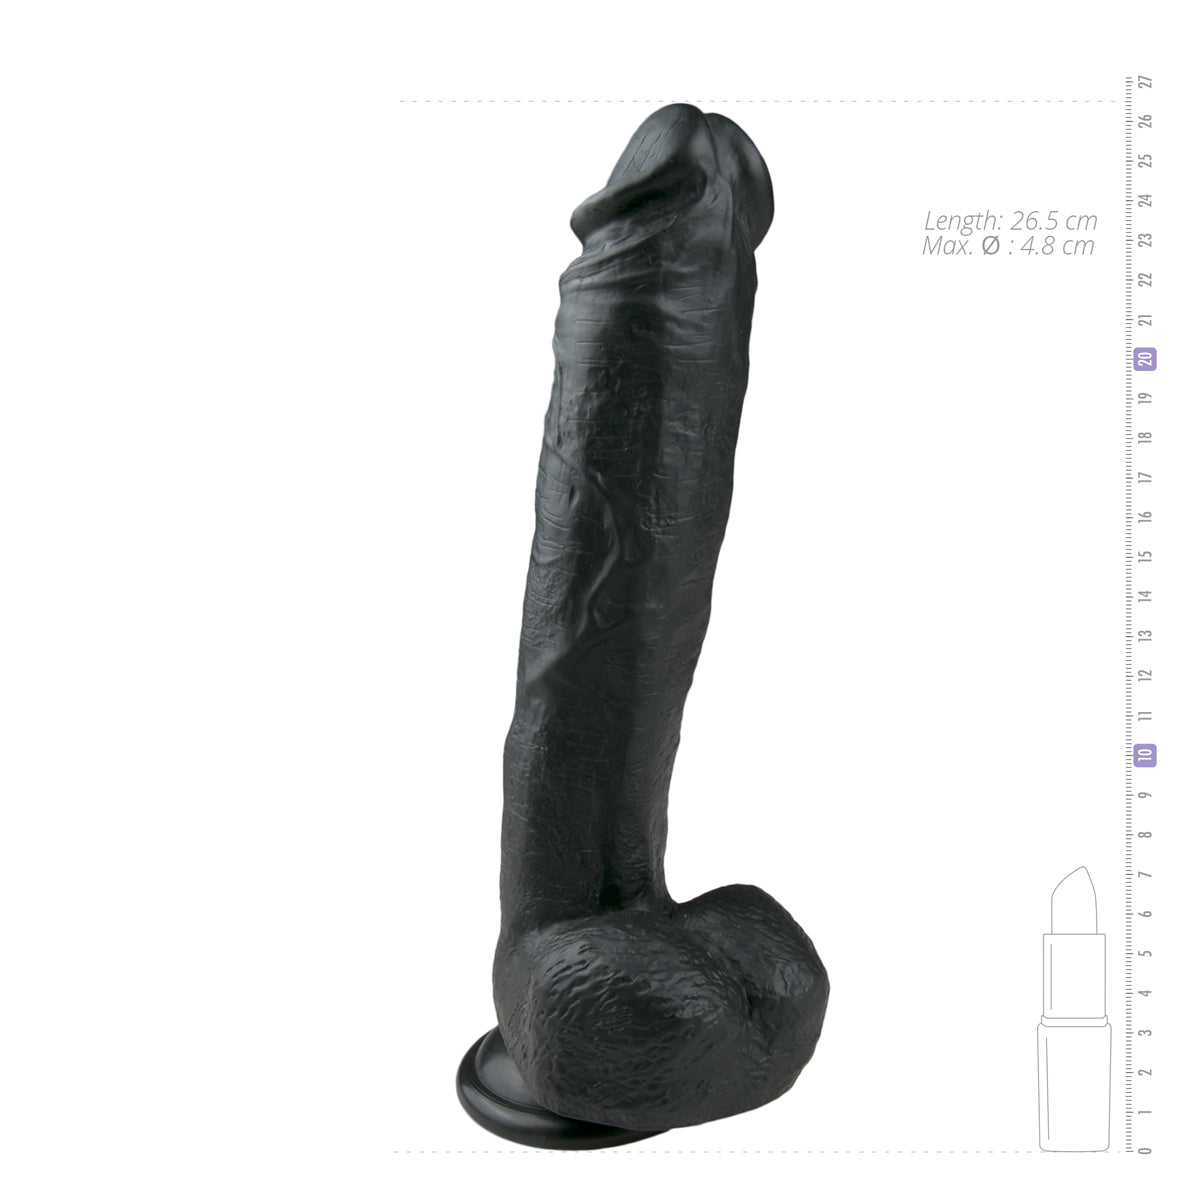 Realistische zwarte XXXXL dildo van 26.5 cm met balzak van het merk EasyToys en te koop je bij Flavourez.